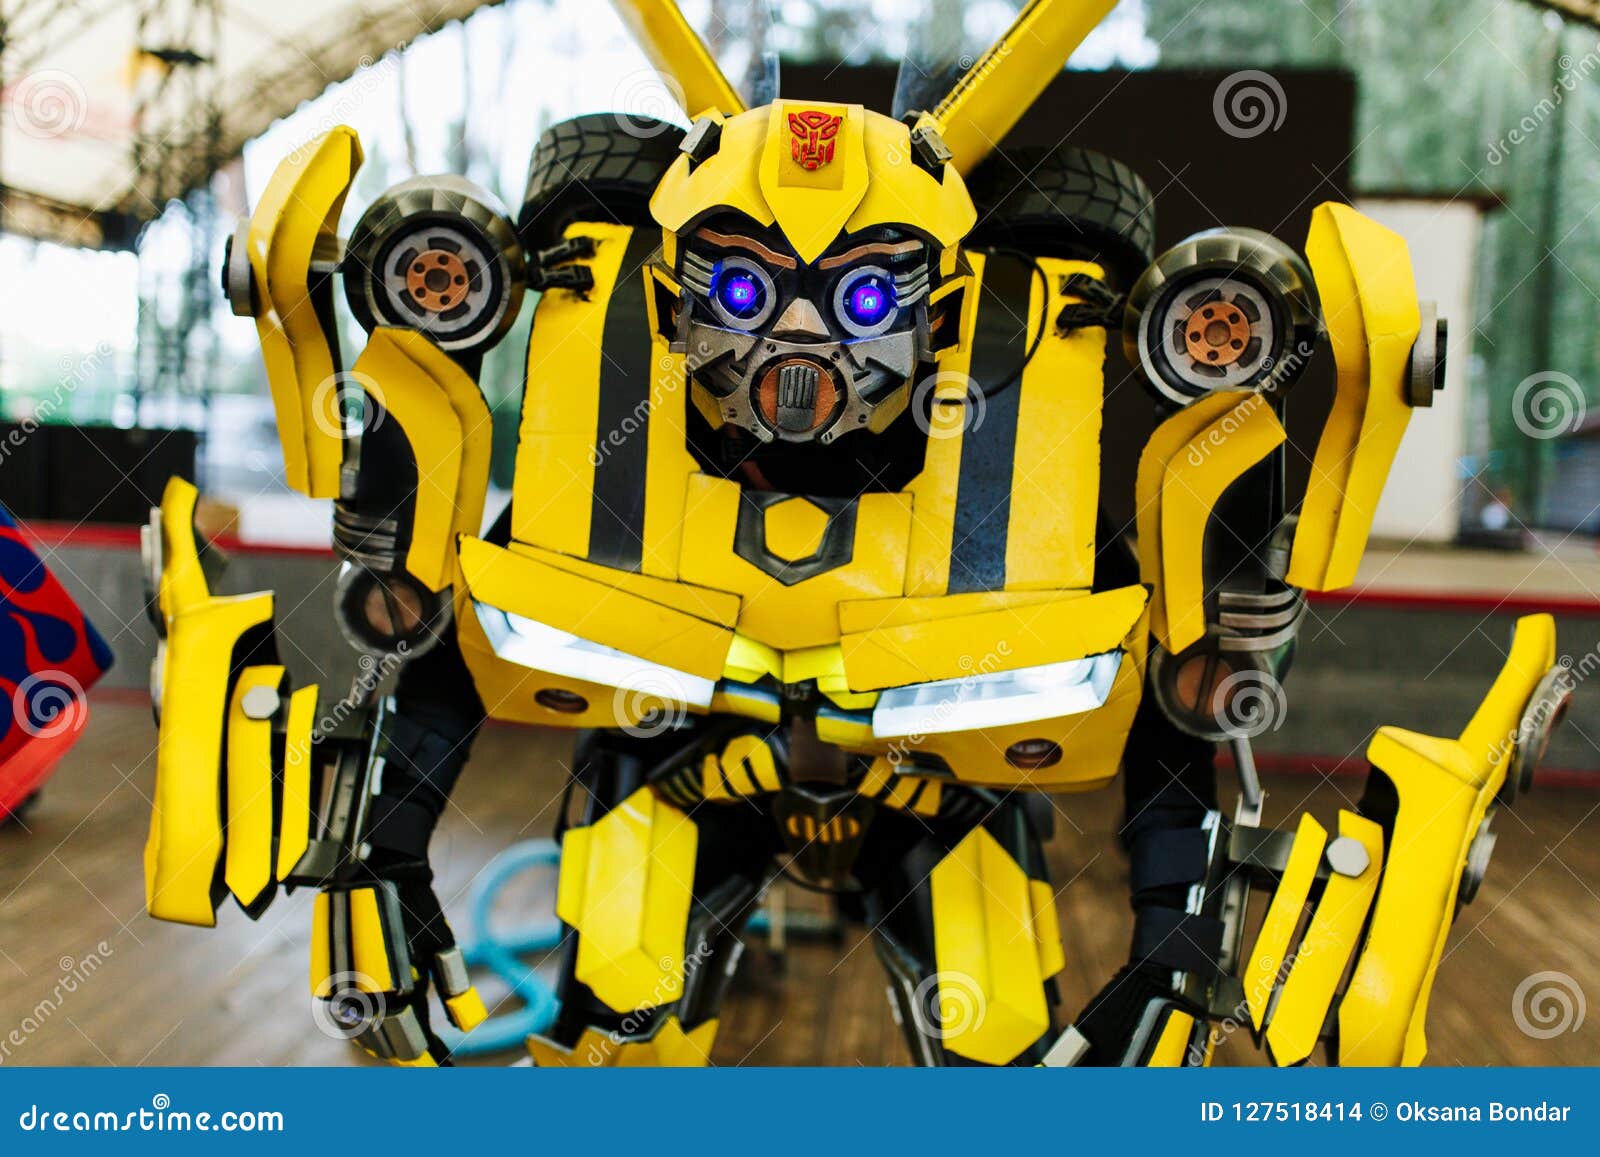 Κίτρινο Bumblebee μετασχηματιστών που ντύνεται με κοστούμι για τη γιορτή  γενεθλίων μωρών Εκδοτική Στοκ Εικόνα - εικόνα από lifestyle, actives:  127518414